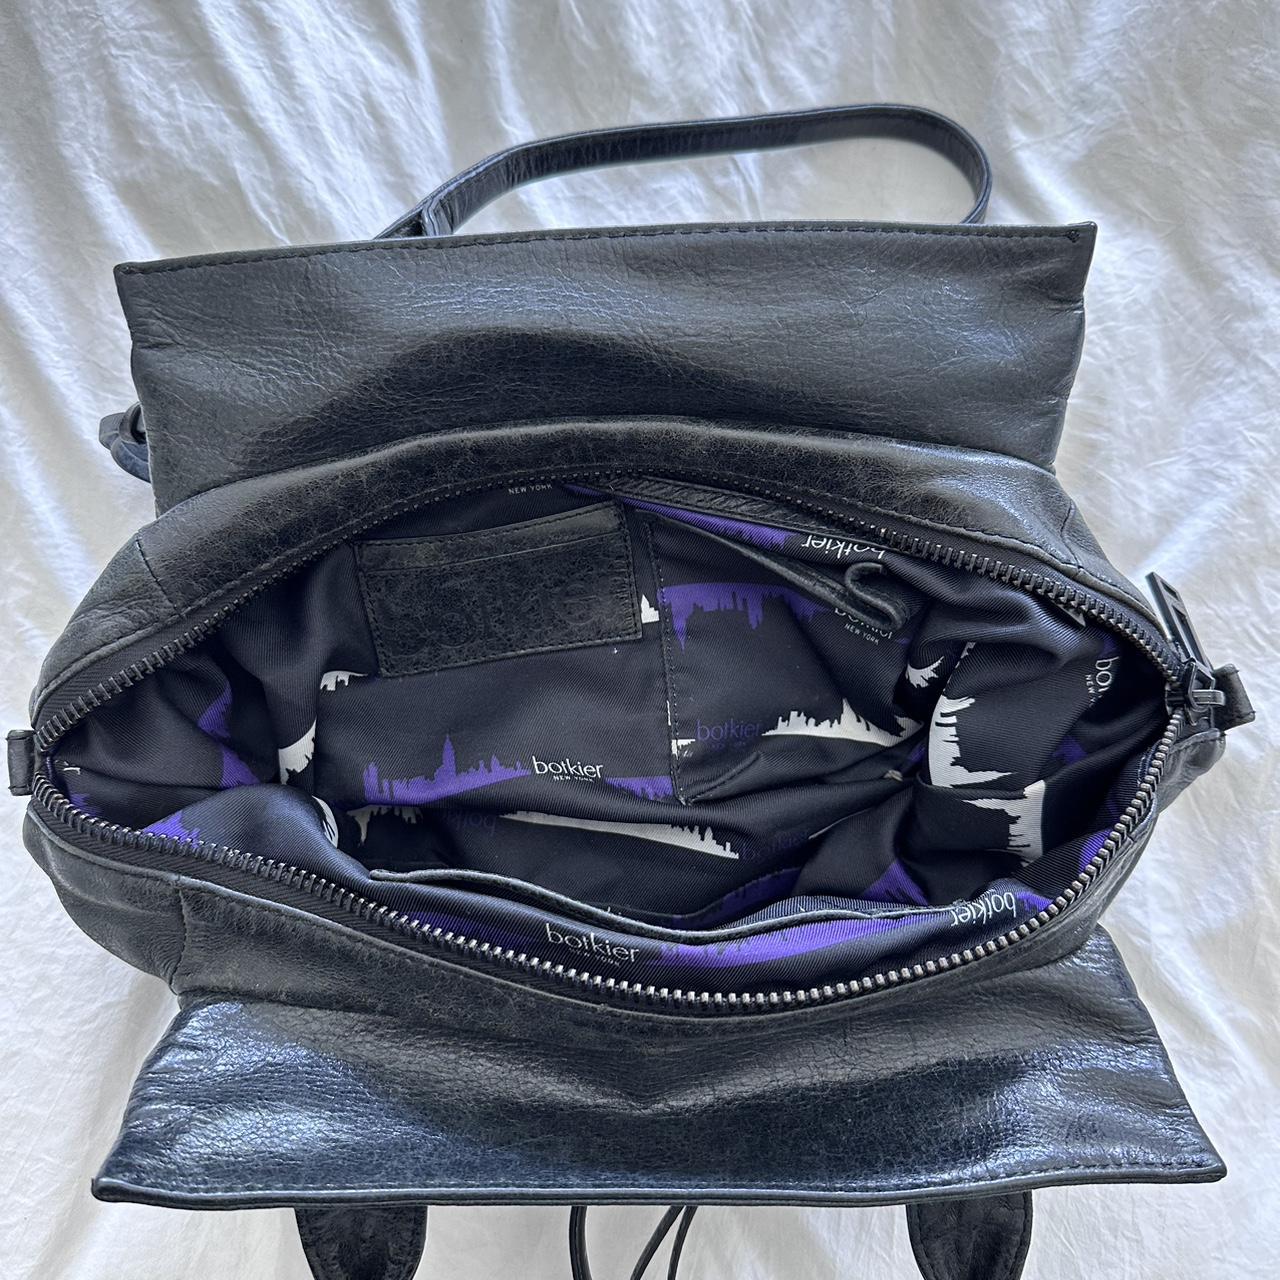 Botkier Women's Black Bag (3)